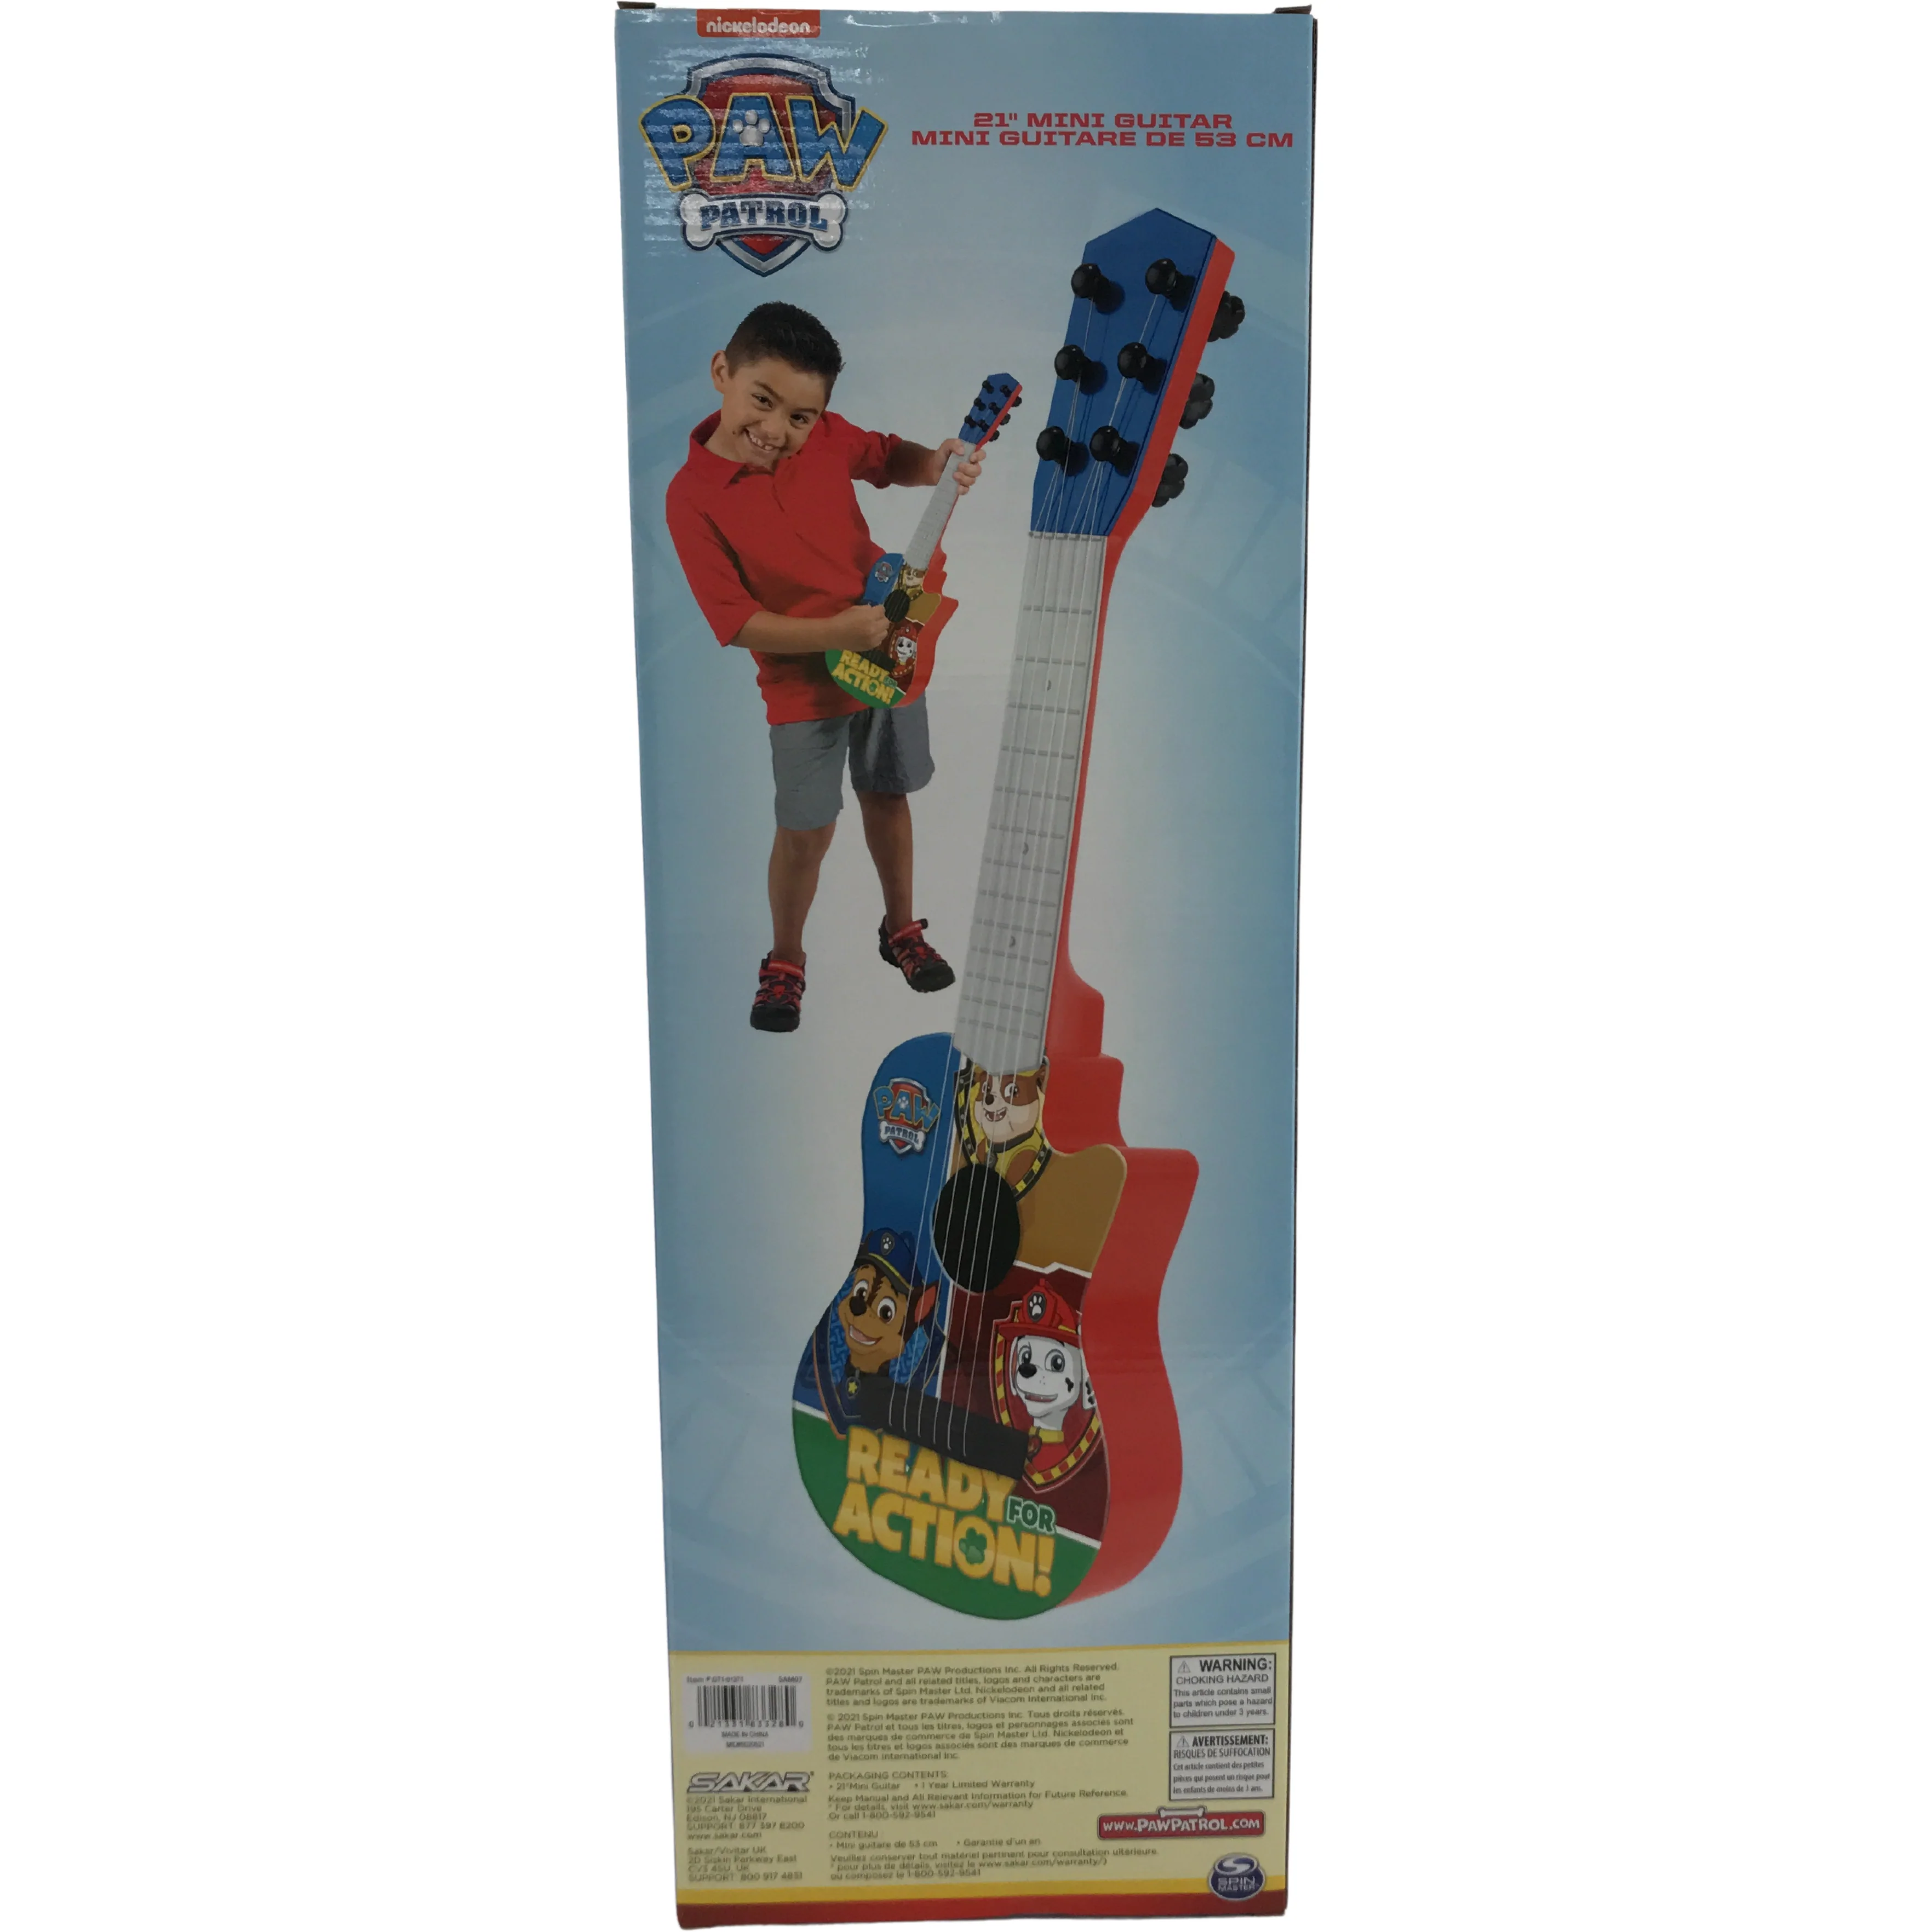 Paw Patrol Children's Guitar / 21" Mini Guitar / Music / Guitar